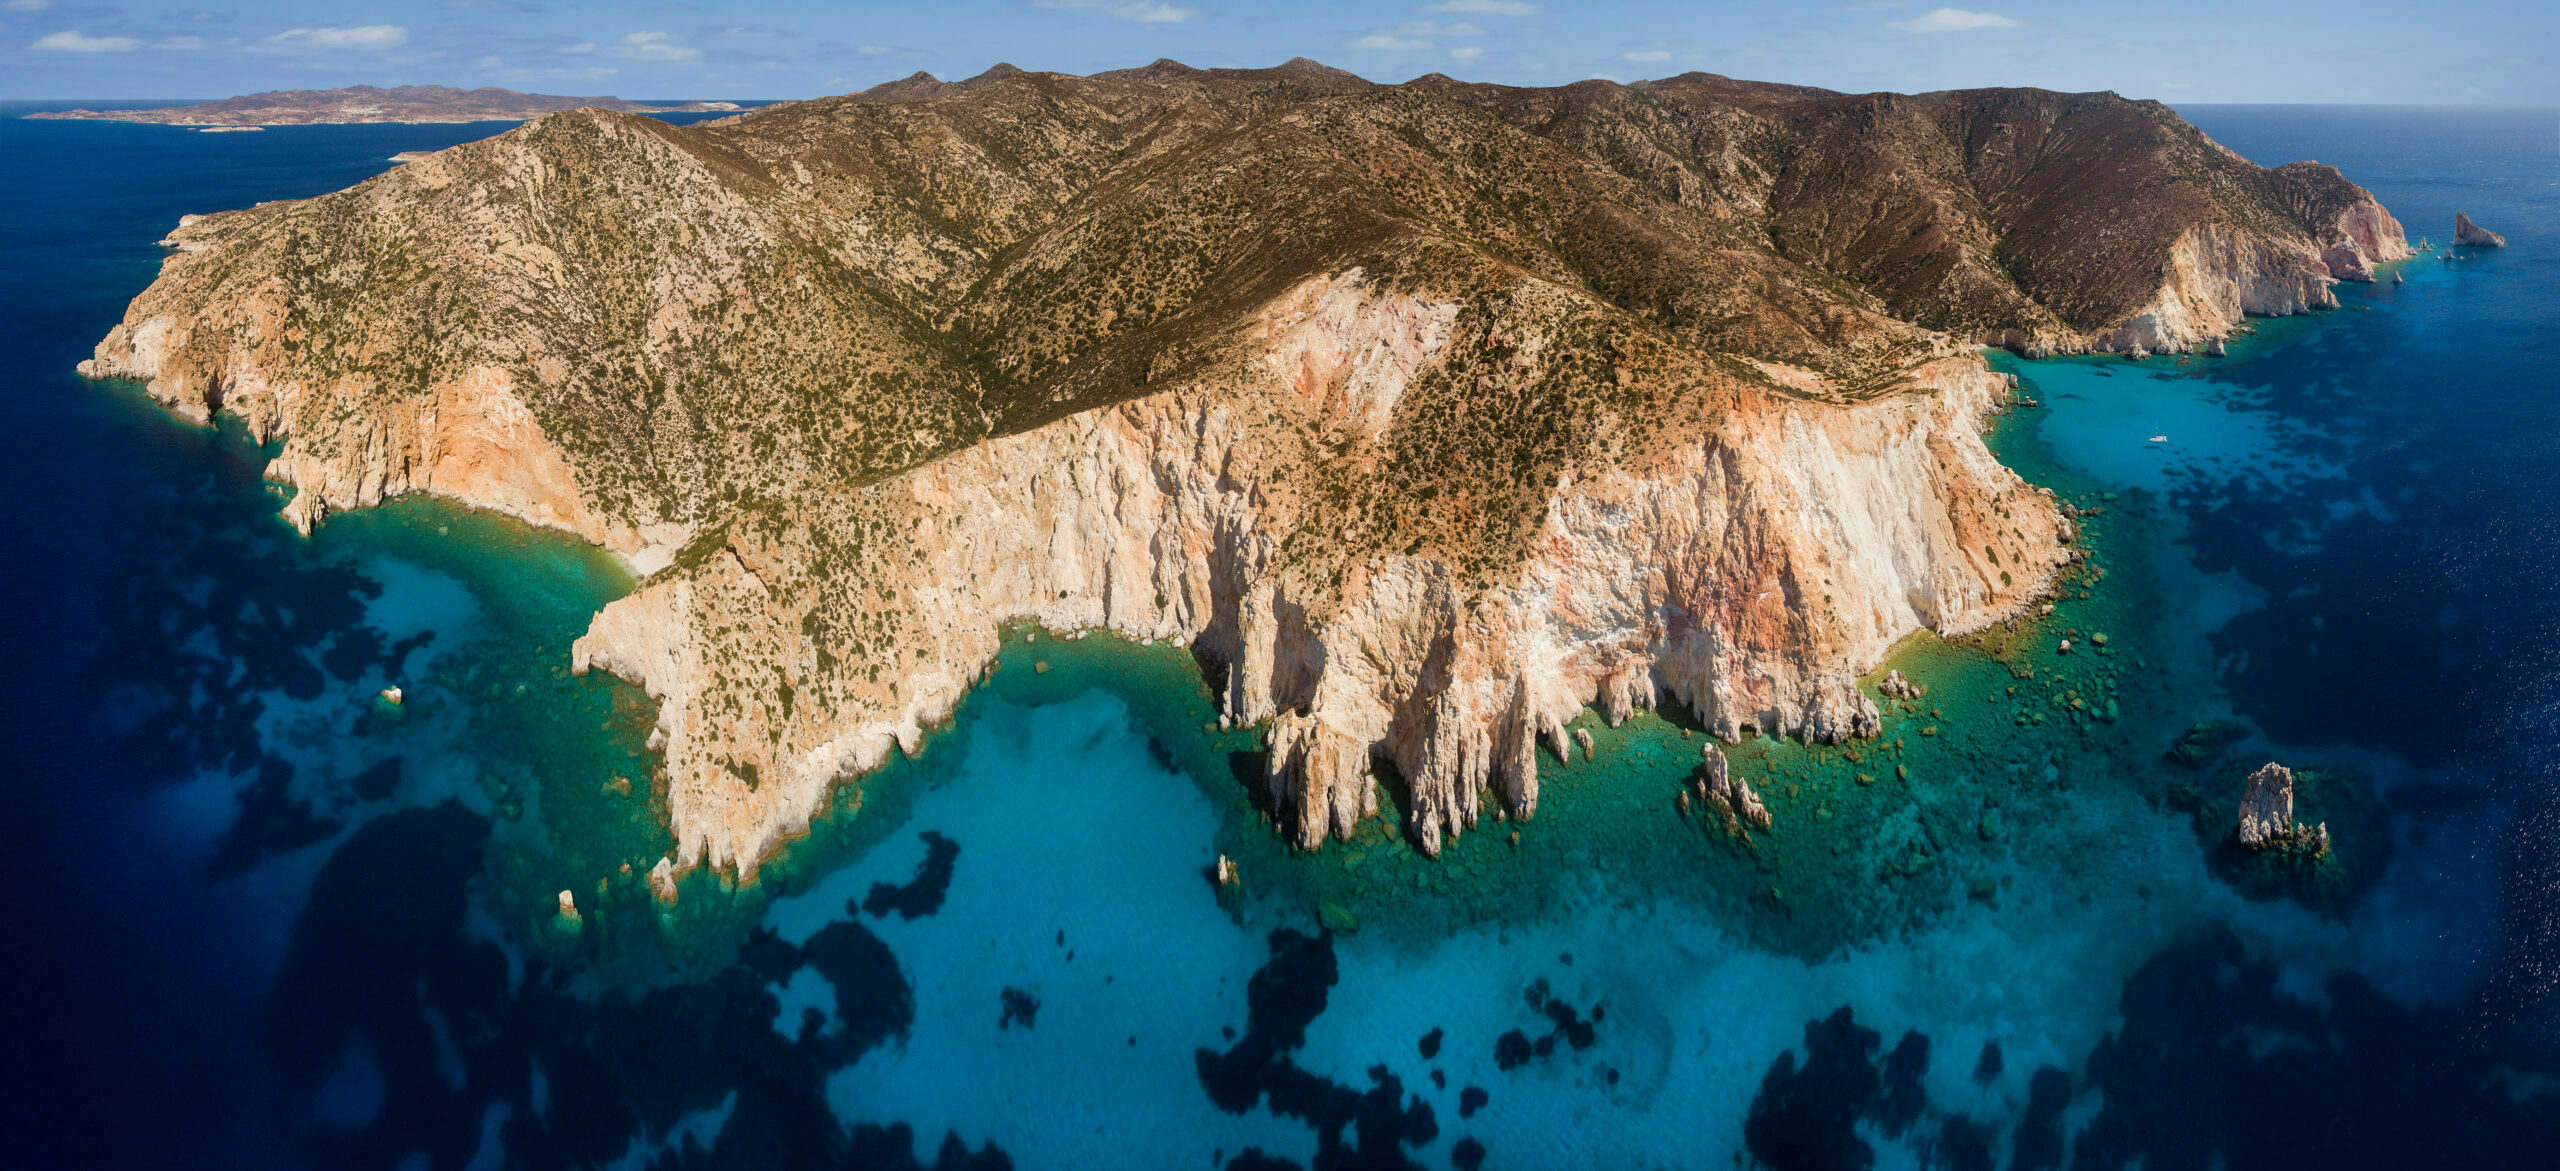 Aegean: The largest uninhabited island full of natural pools